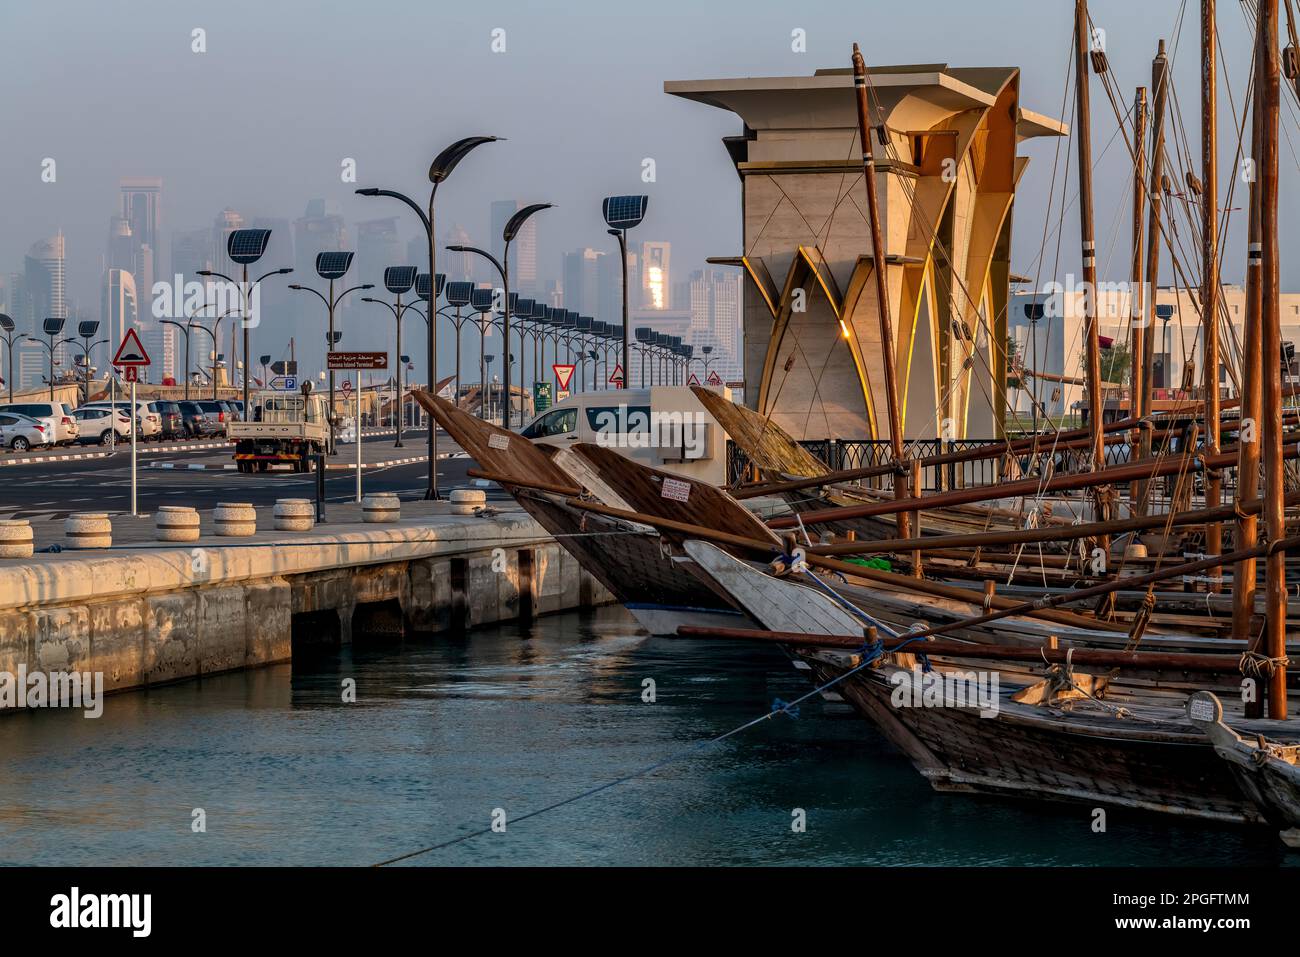 Dhow boats, Doha, Qatar Stock Photo